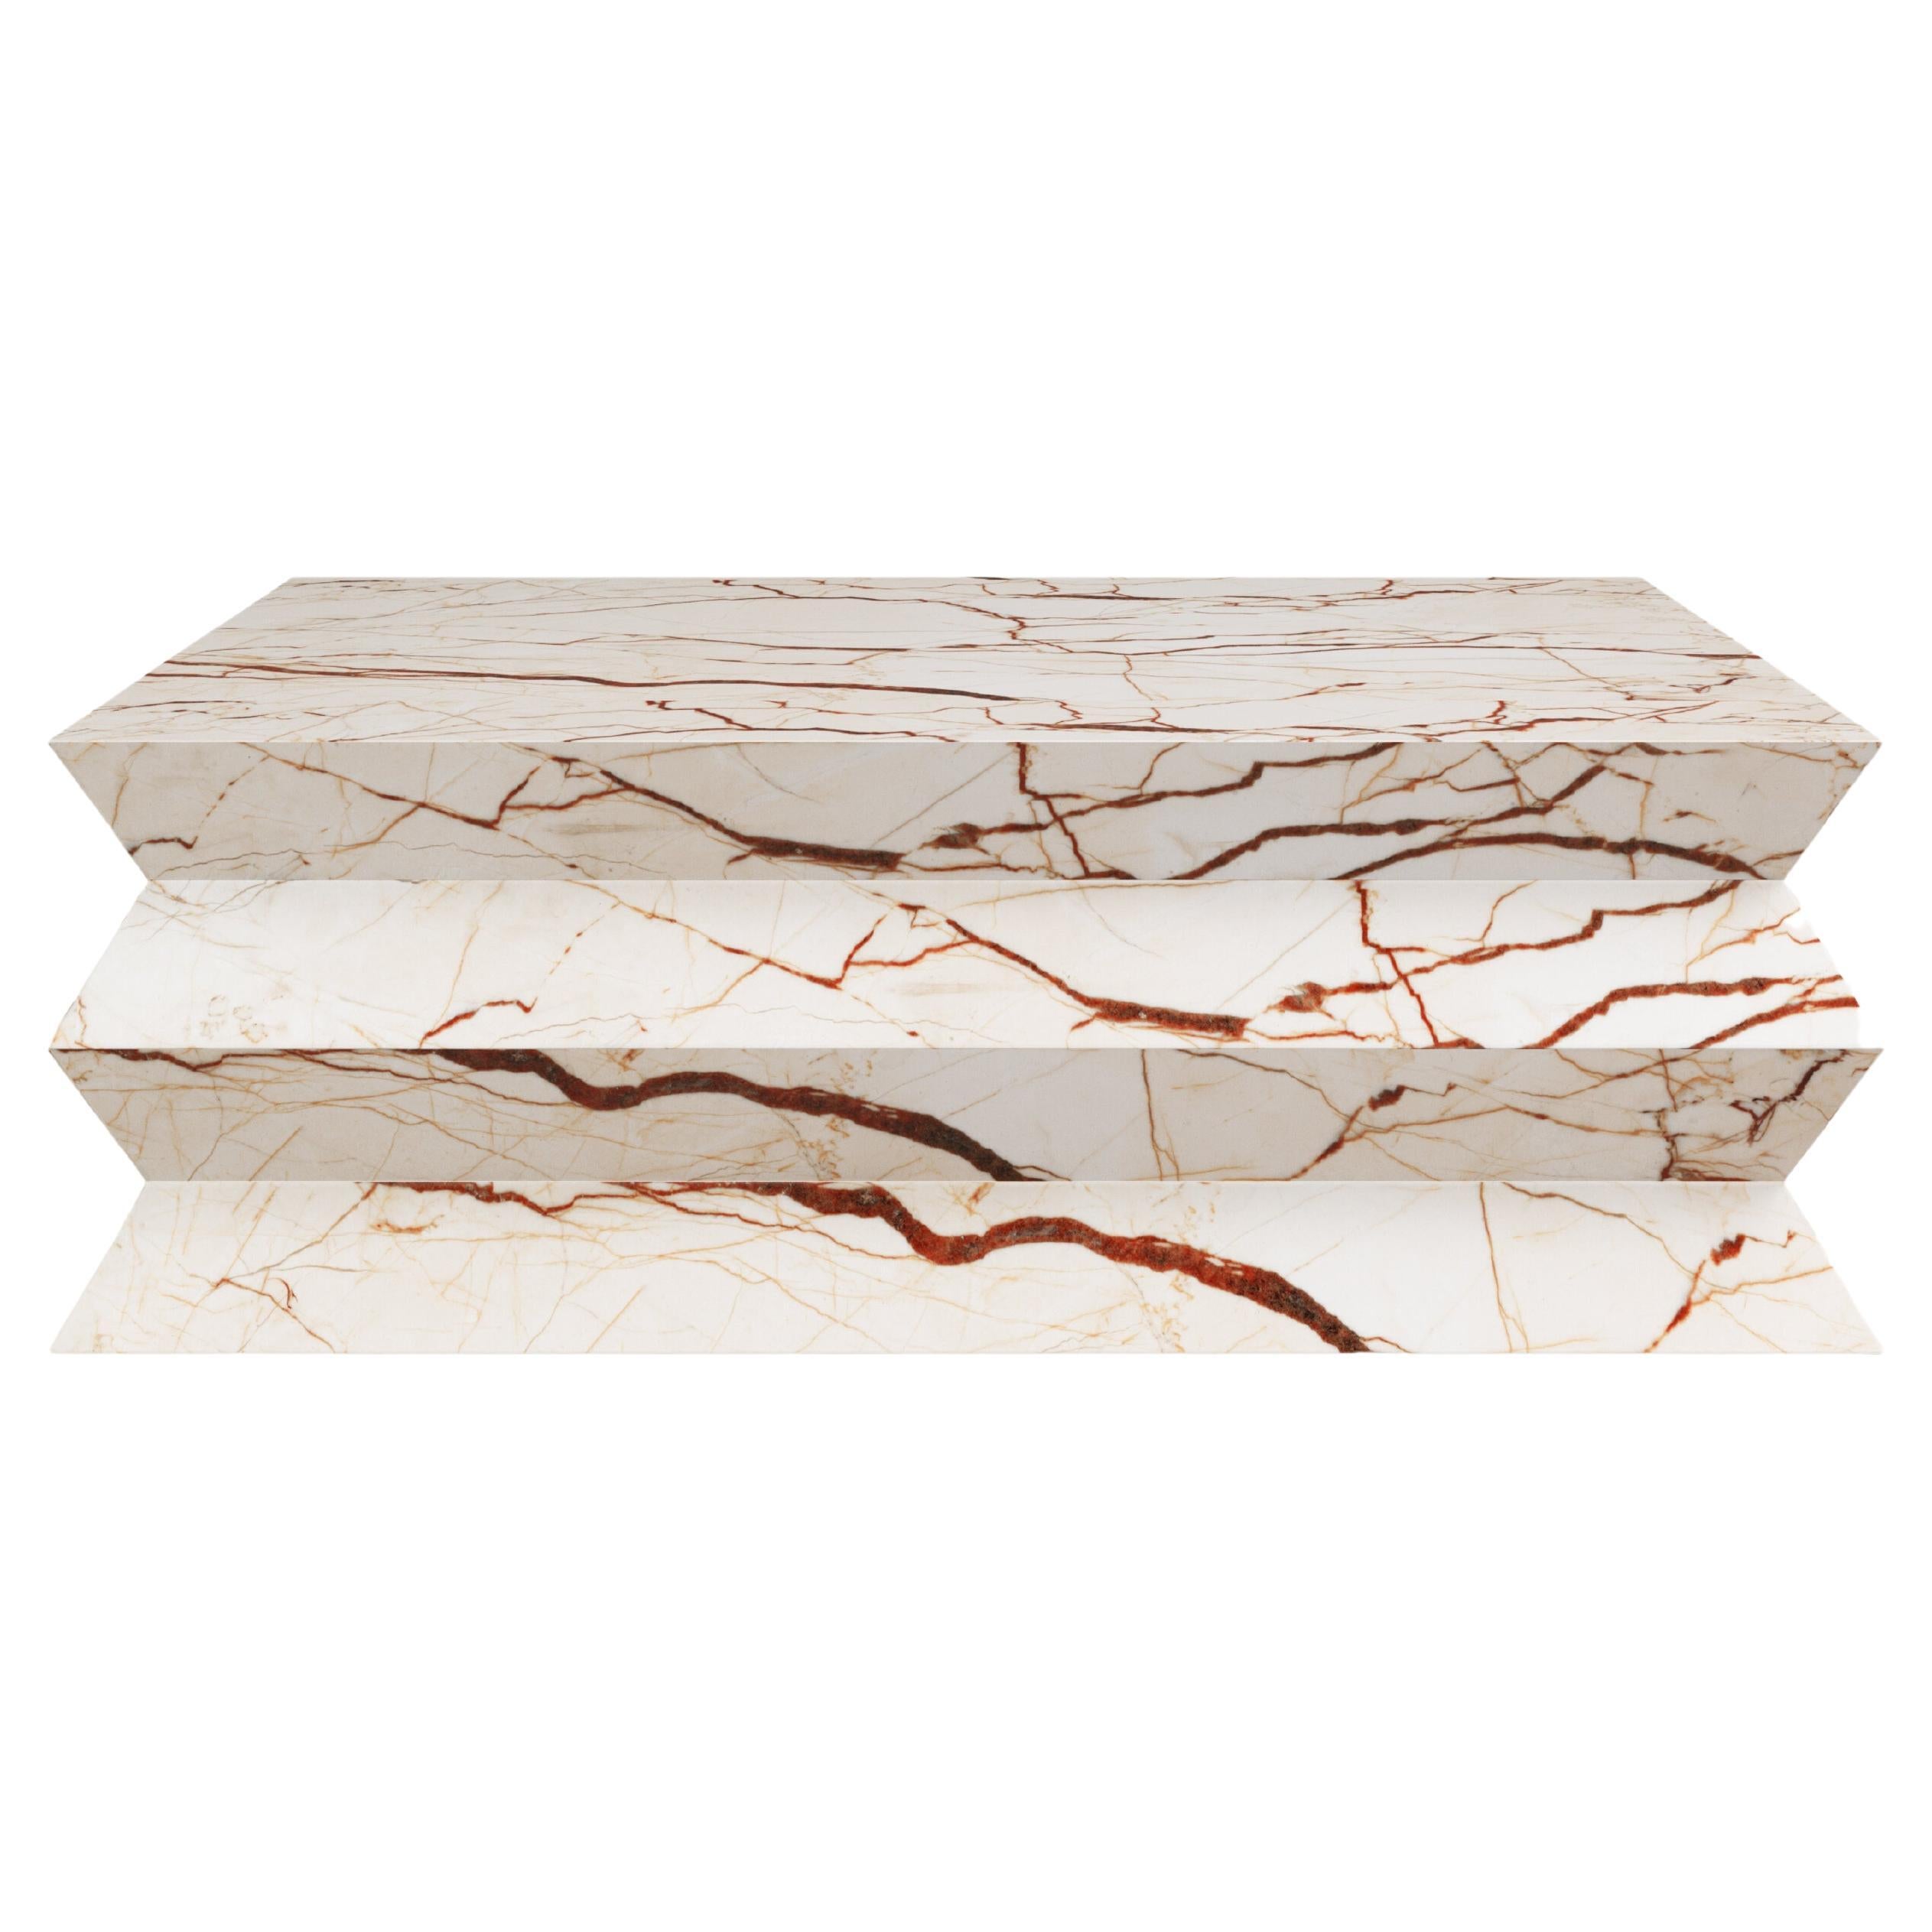 FORM(LA) table basse carrée Grinza 60 po. (L) x 60 po. (L) x 16 po. (H) Sofita marbre beige en vente